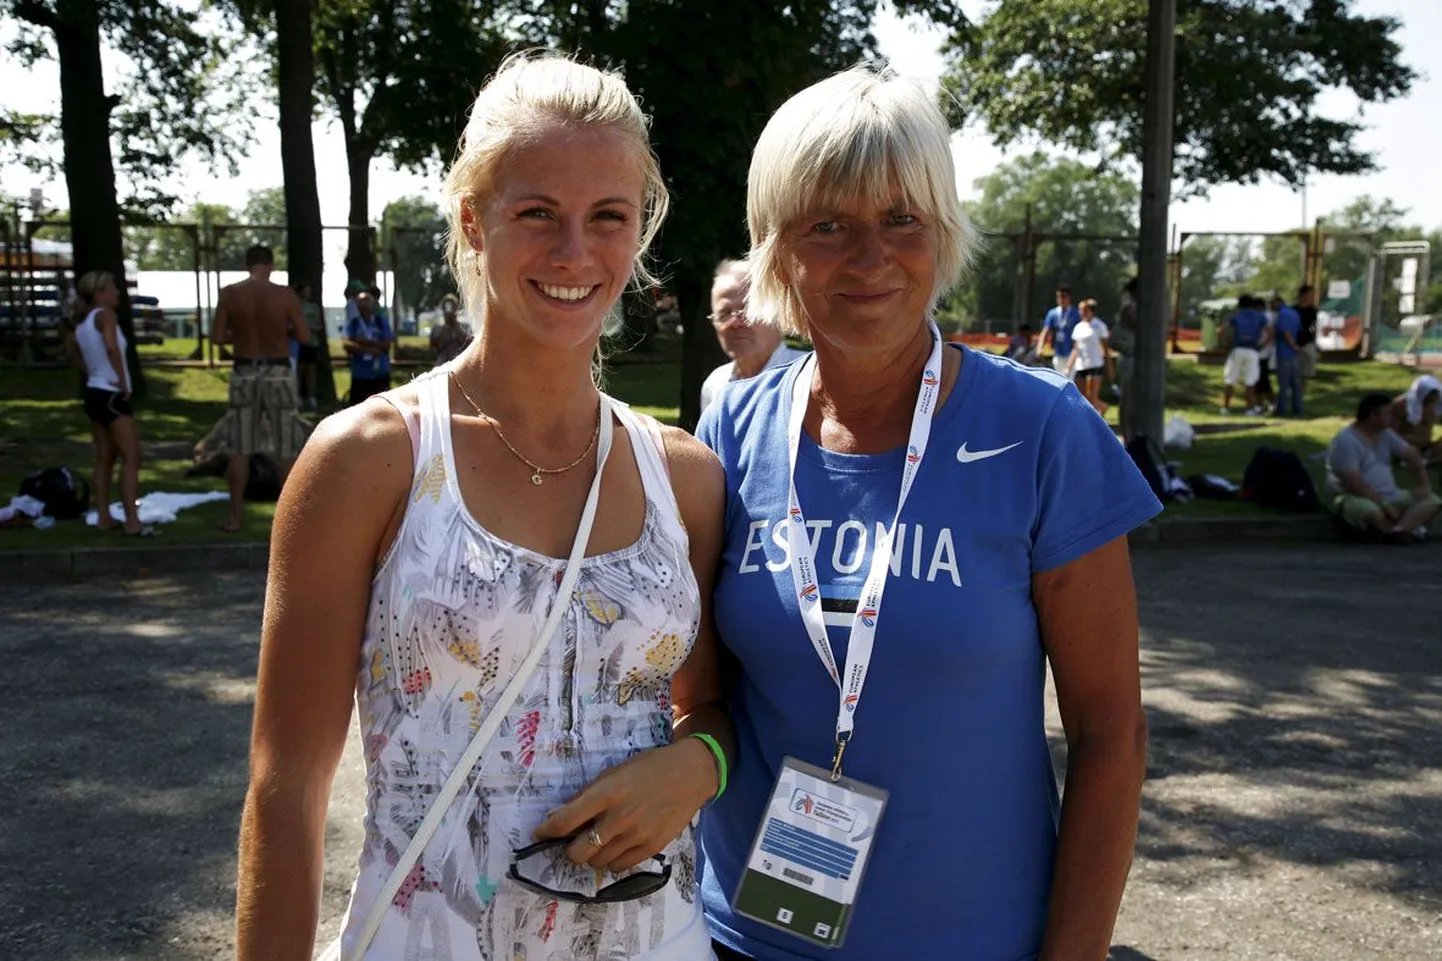 Koostöö Tšehhis Ostravas kergejõustiku U23 Euroopa meistrivõistlustel uut isiklikku rekordit tähistava 6134 punktiga kuldmedali võitnud Grit Šadeiko ja tema treener Anne Mägi vahel toimib hästi. Ka on mõlemad öelnud, et jutuajamise asemel lasevad nad võimalusel parem tegudel rääkida.